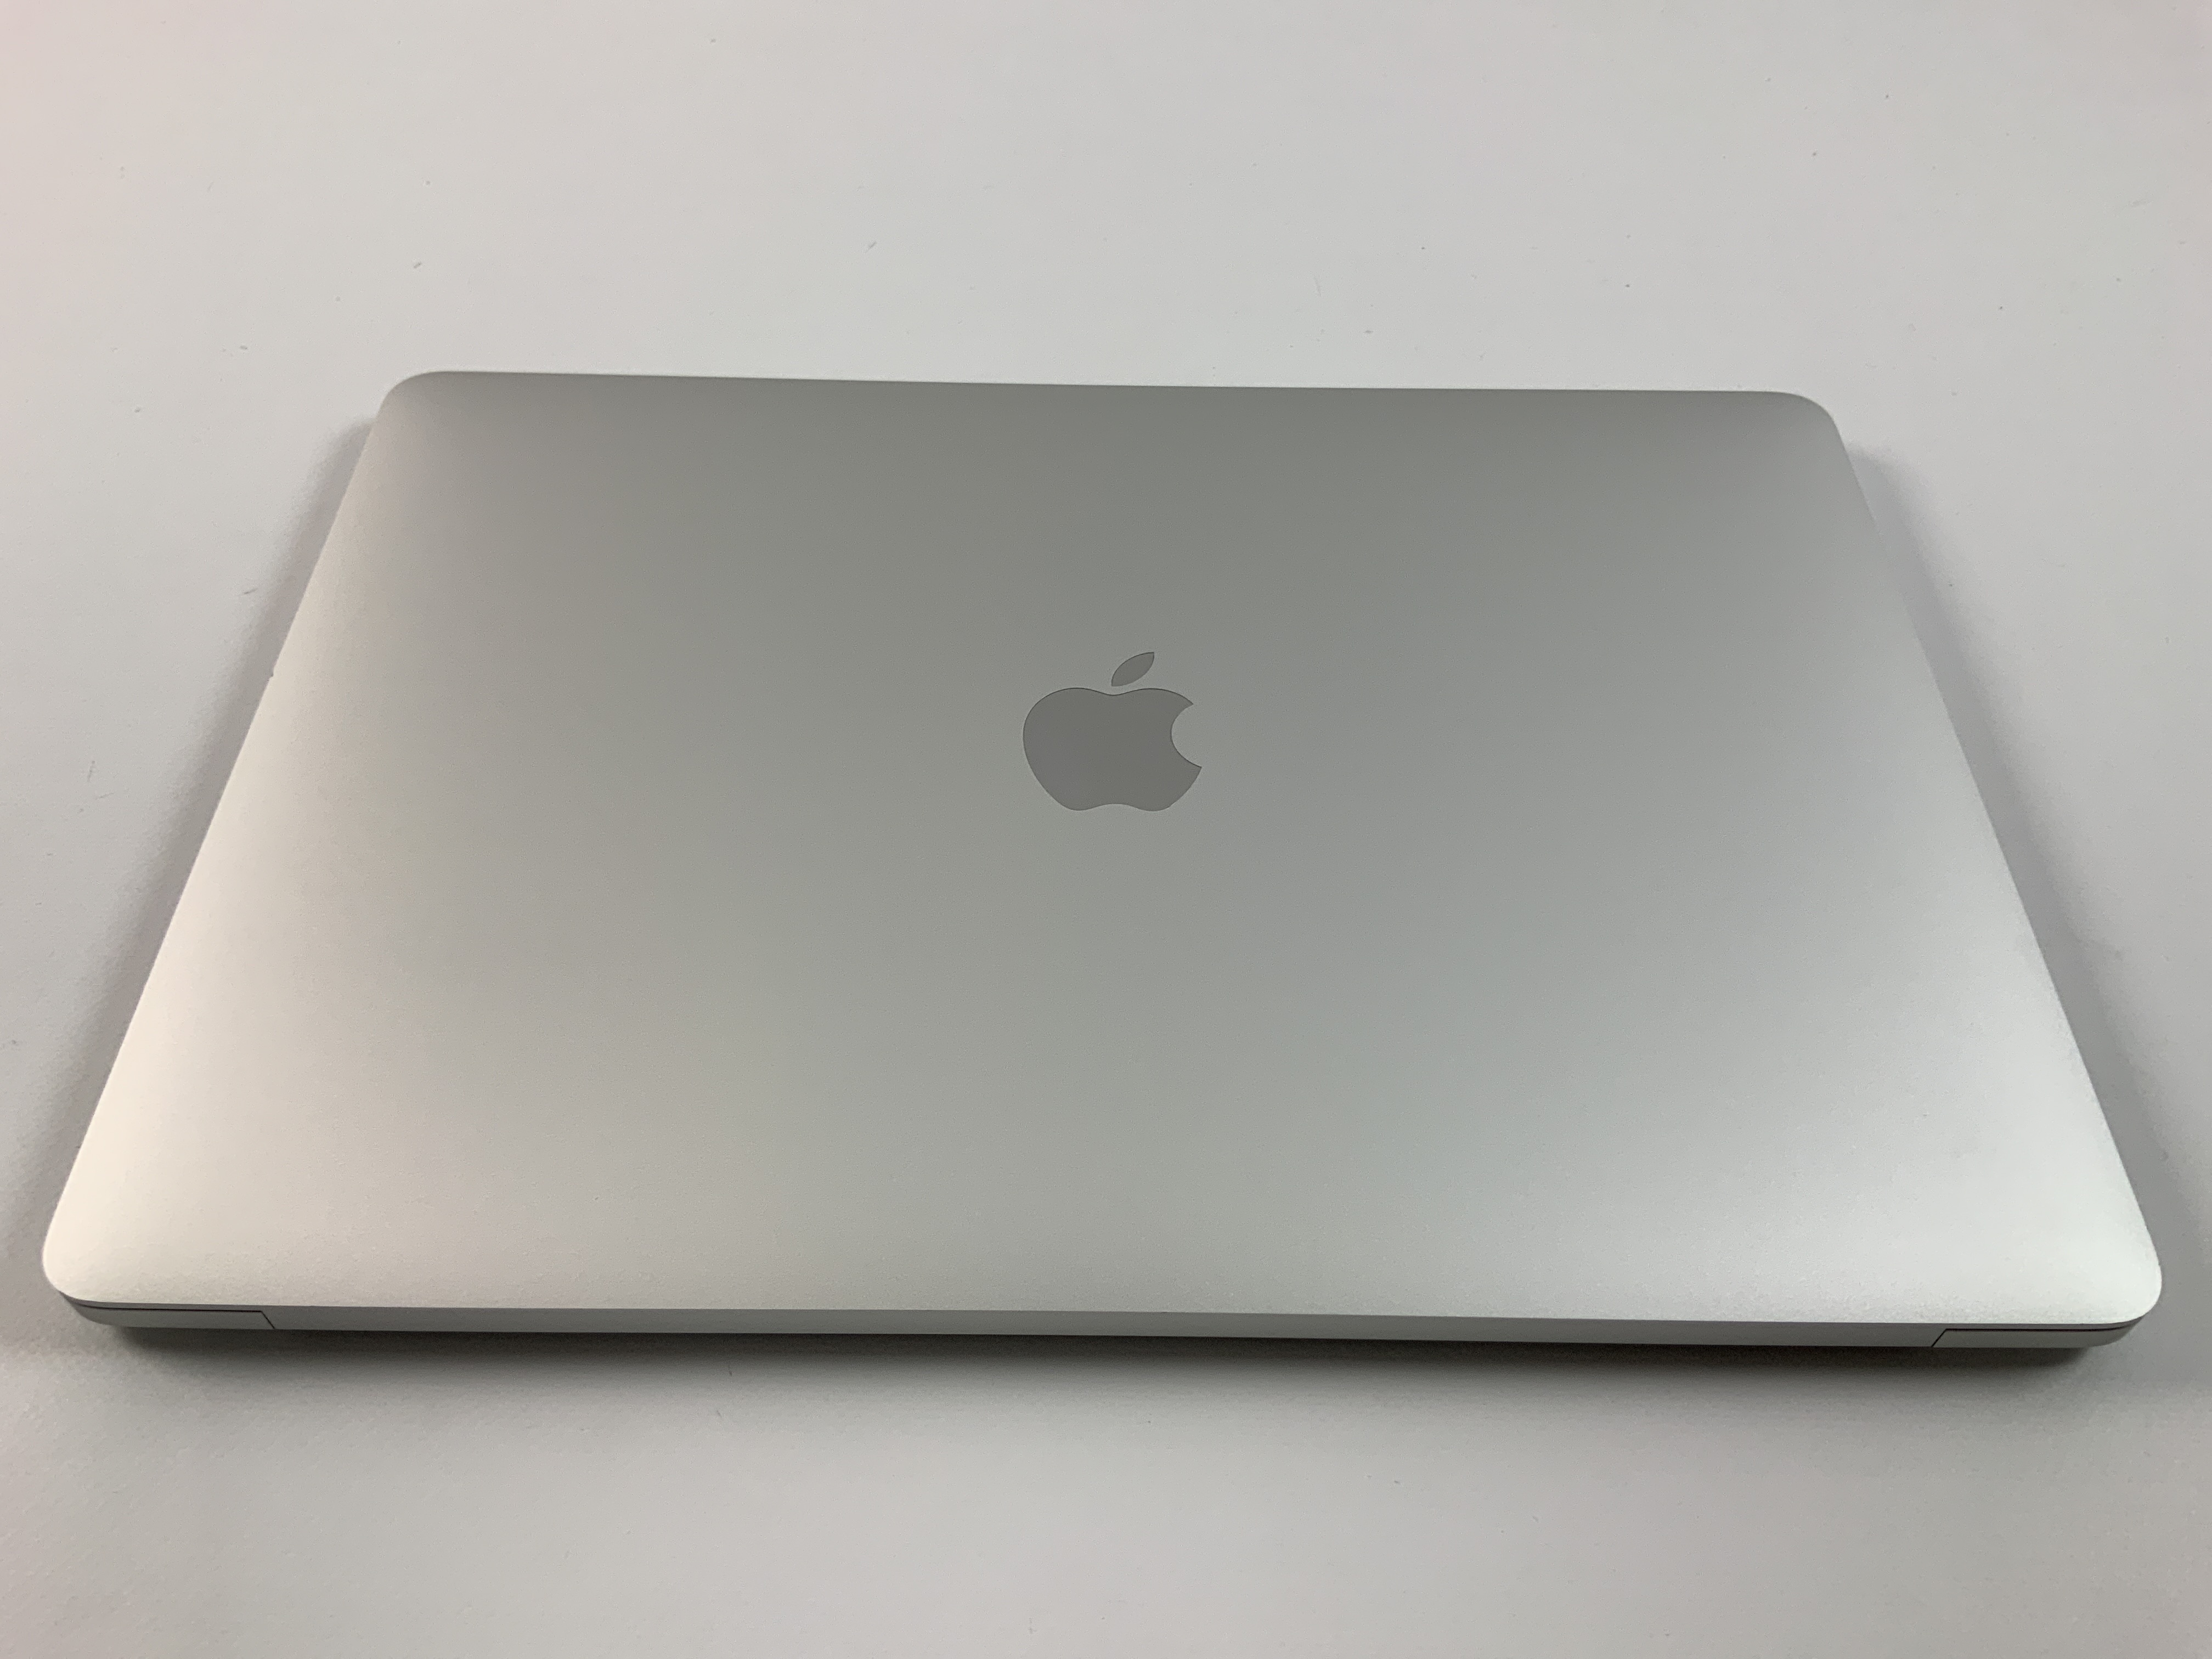 MacBook Pro 13" 2TBT Mid 2020 (Intel Quad-Core i5 1.4 GHz 8 GB RAM 512 GB SSD), Silver, Intel Quad-Core i5 1.4 GHz, 8 GB RAM, 512 GB SSD, imagen 2